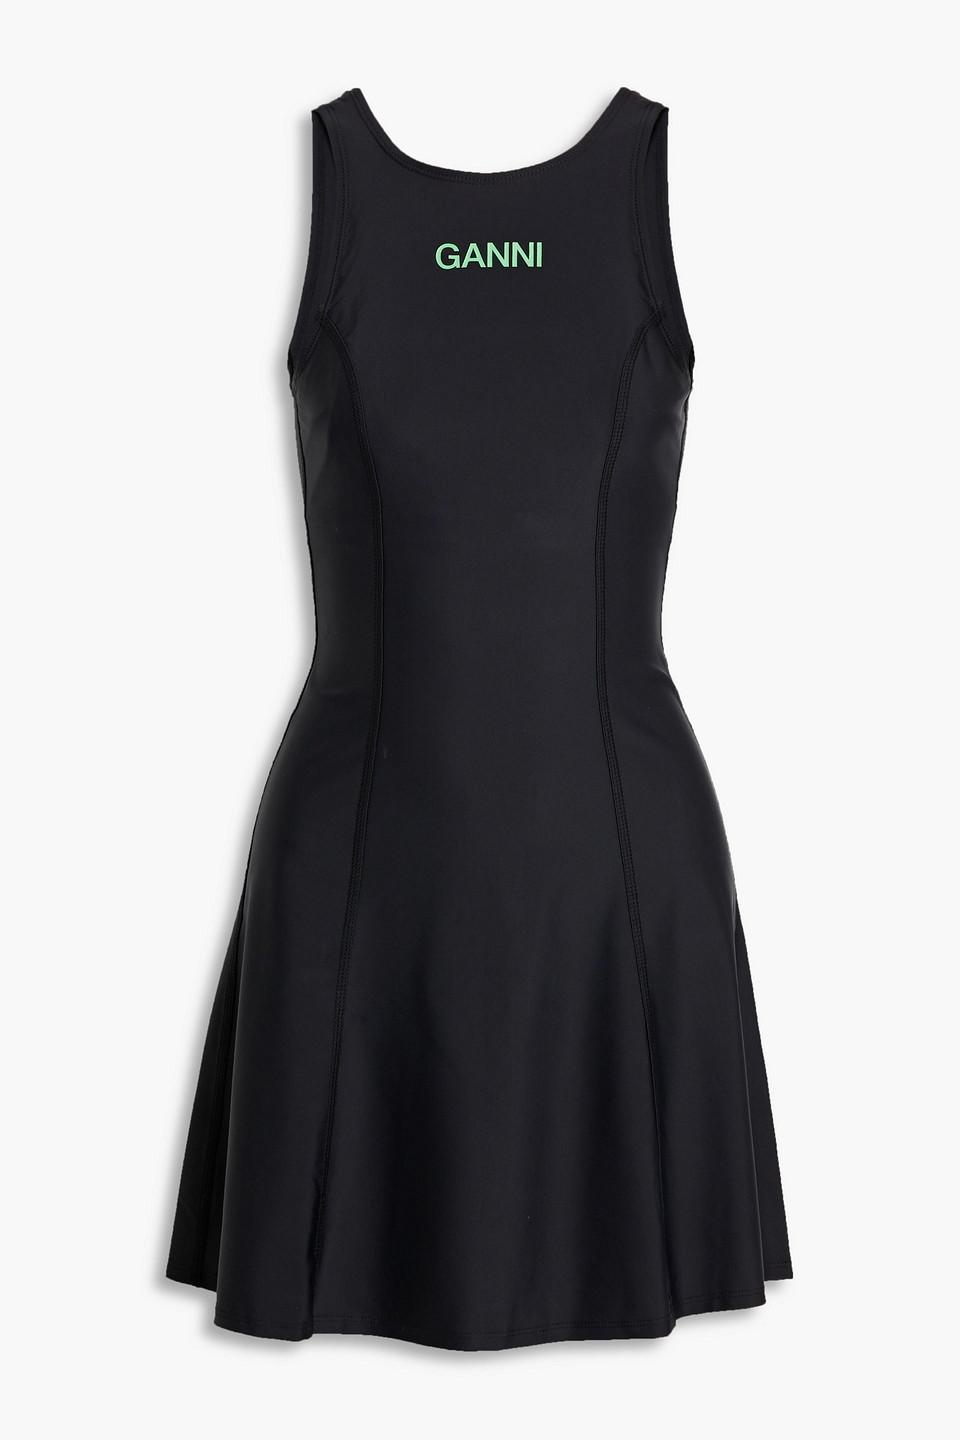 Ganni Printed Stretch Tennis Dress in Black | Lyst